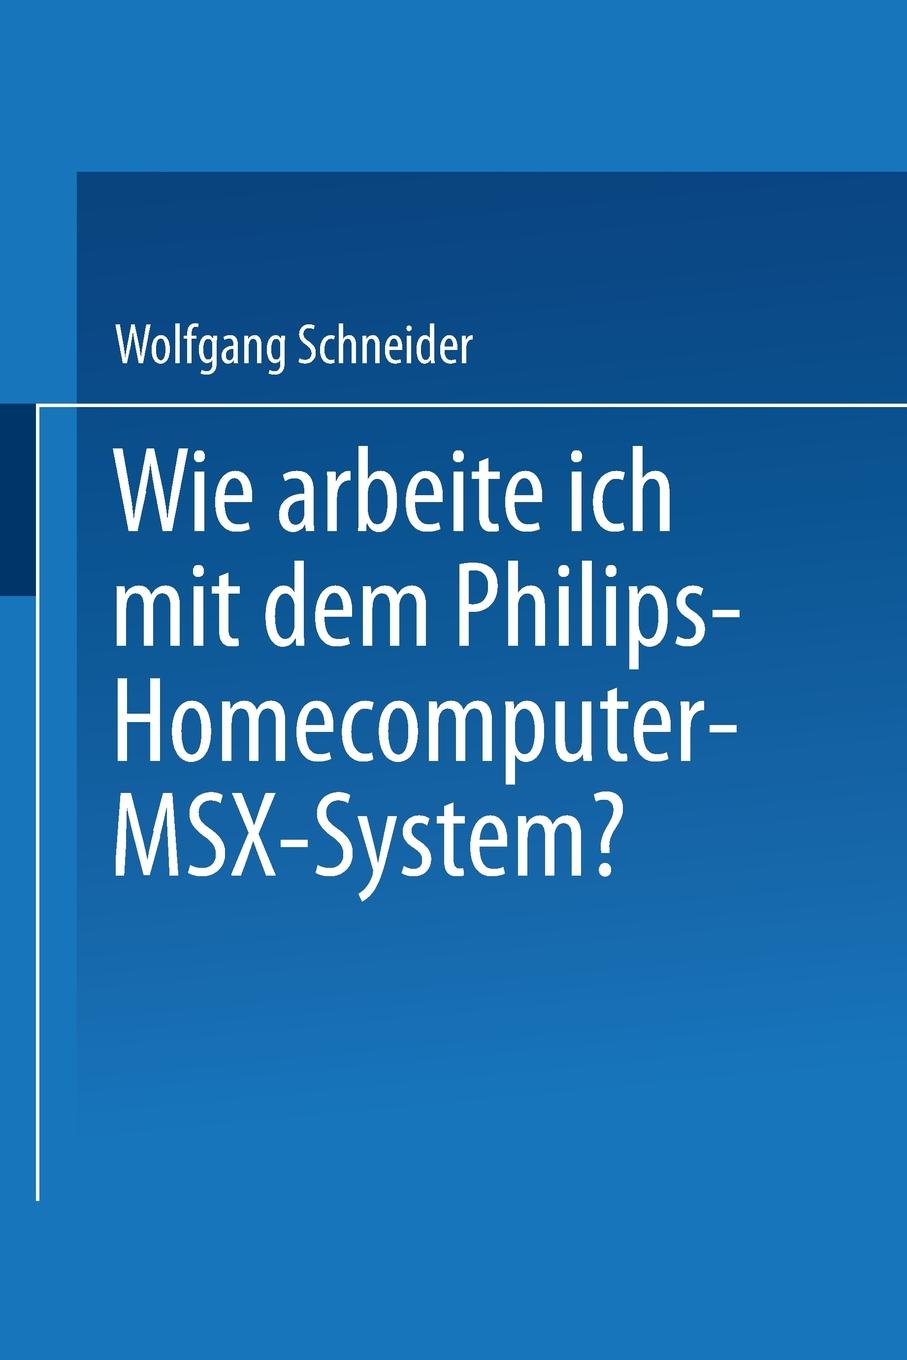 Wie arbeite ich mit dem Philips Homecomputer MSX. - System.